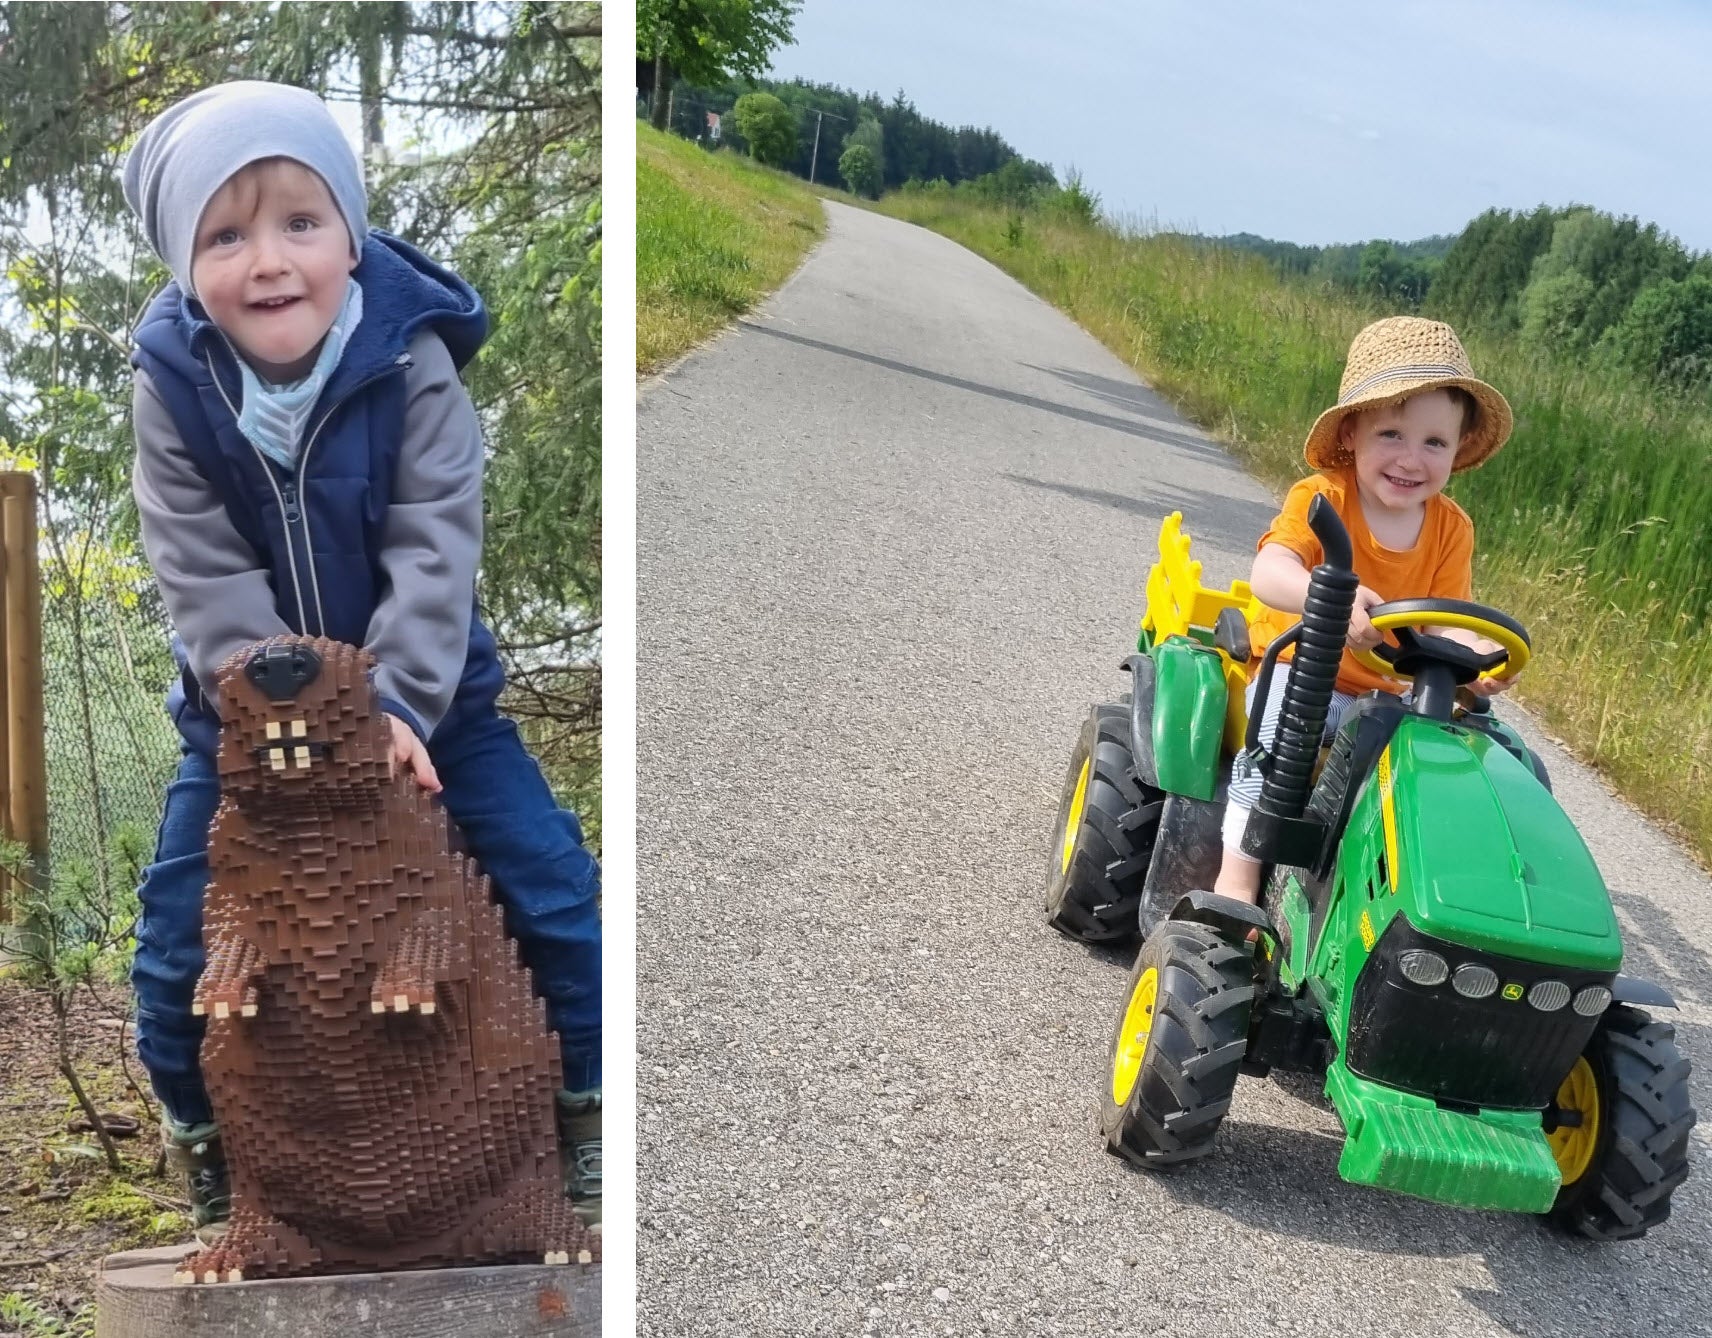 Auf dem linken Foto sieht man Nico im Wald mit einer Murmeltier-Figur. Rechts im Bild fährt Nico auf einem Spielzeugtraktor und lächelt glücklich in die Kamera.